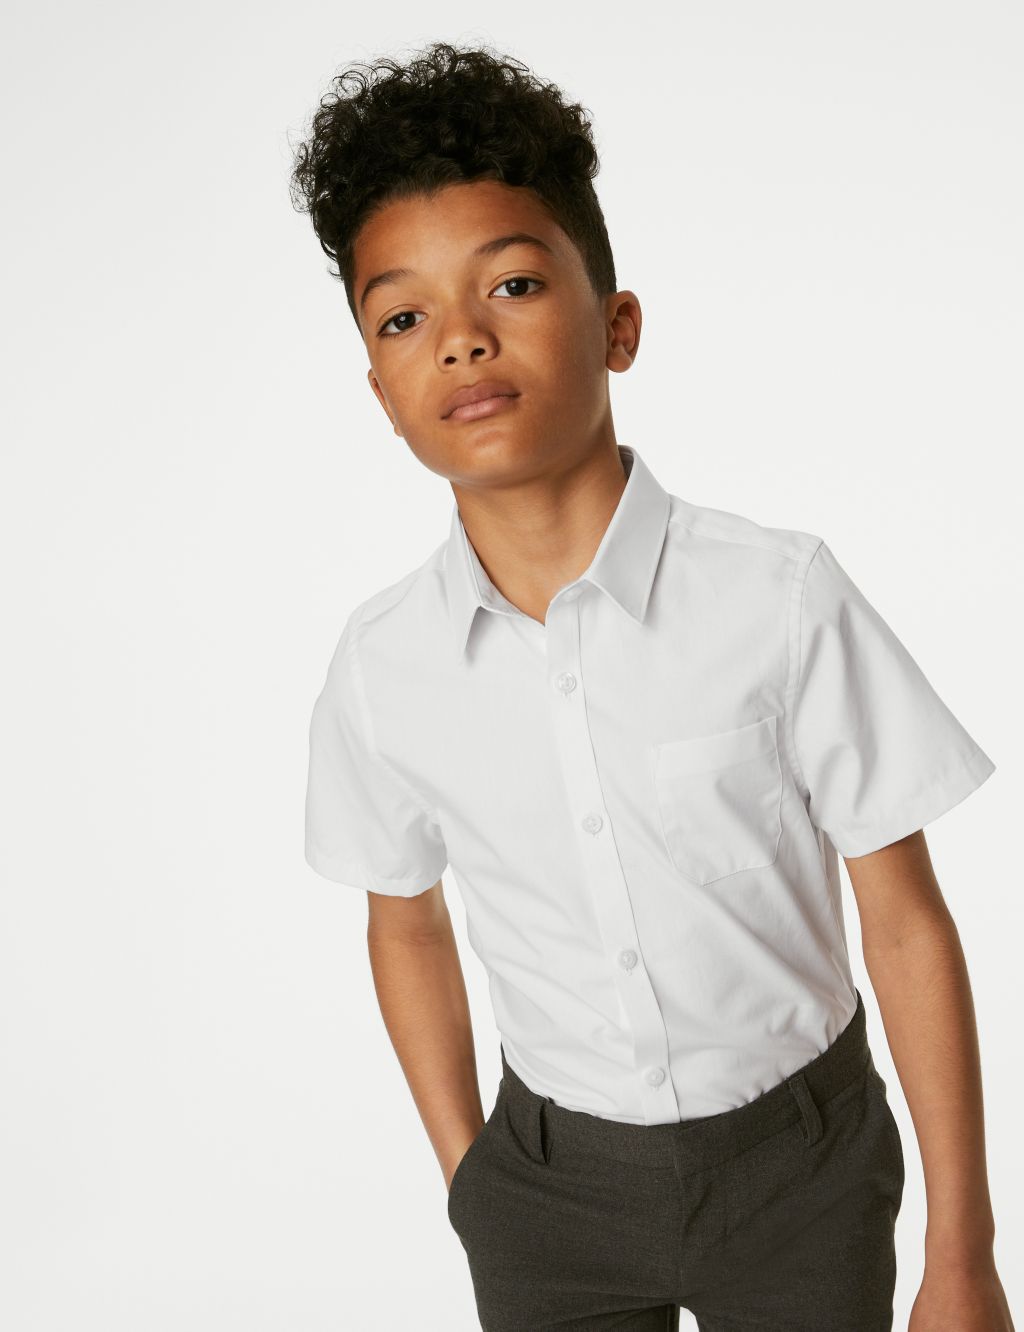 2pk Boys' Slim Fit Cotton School Shirts (2-18 Yrs) image 2